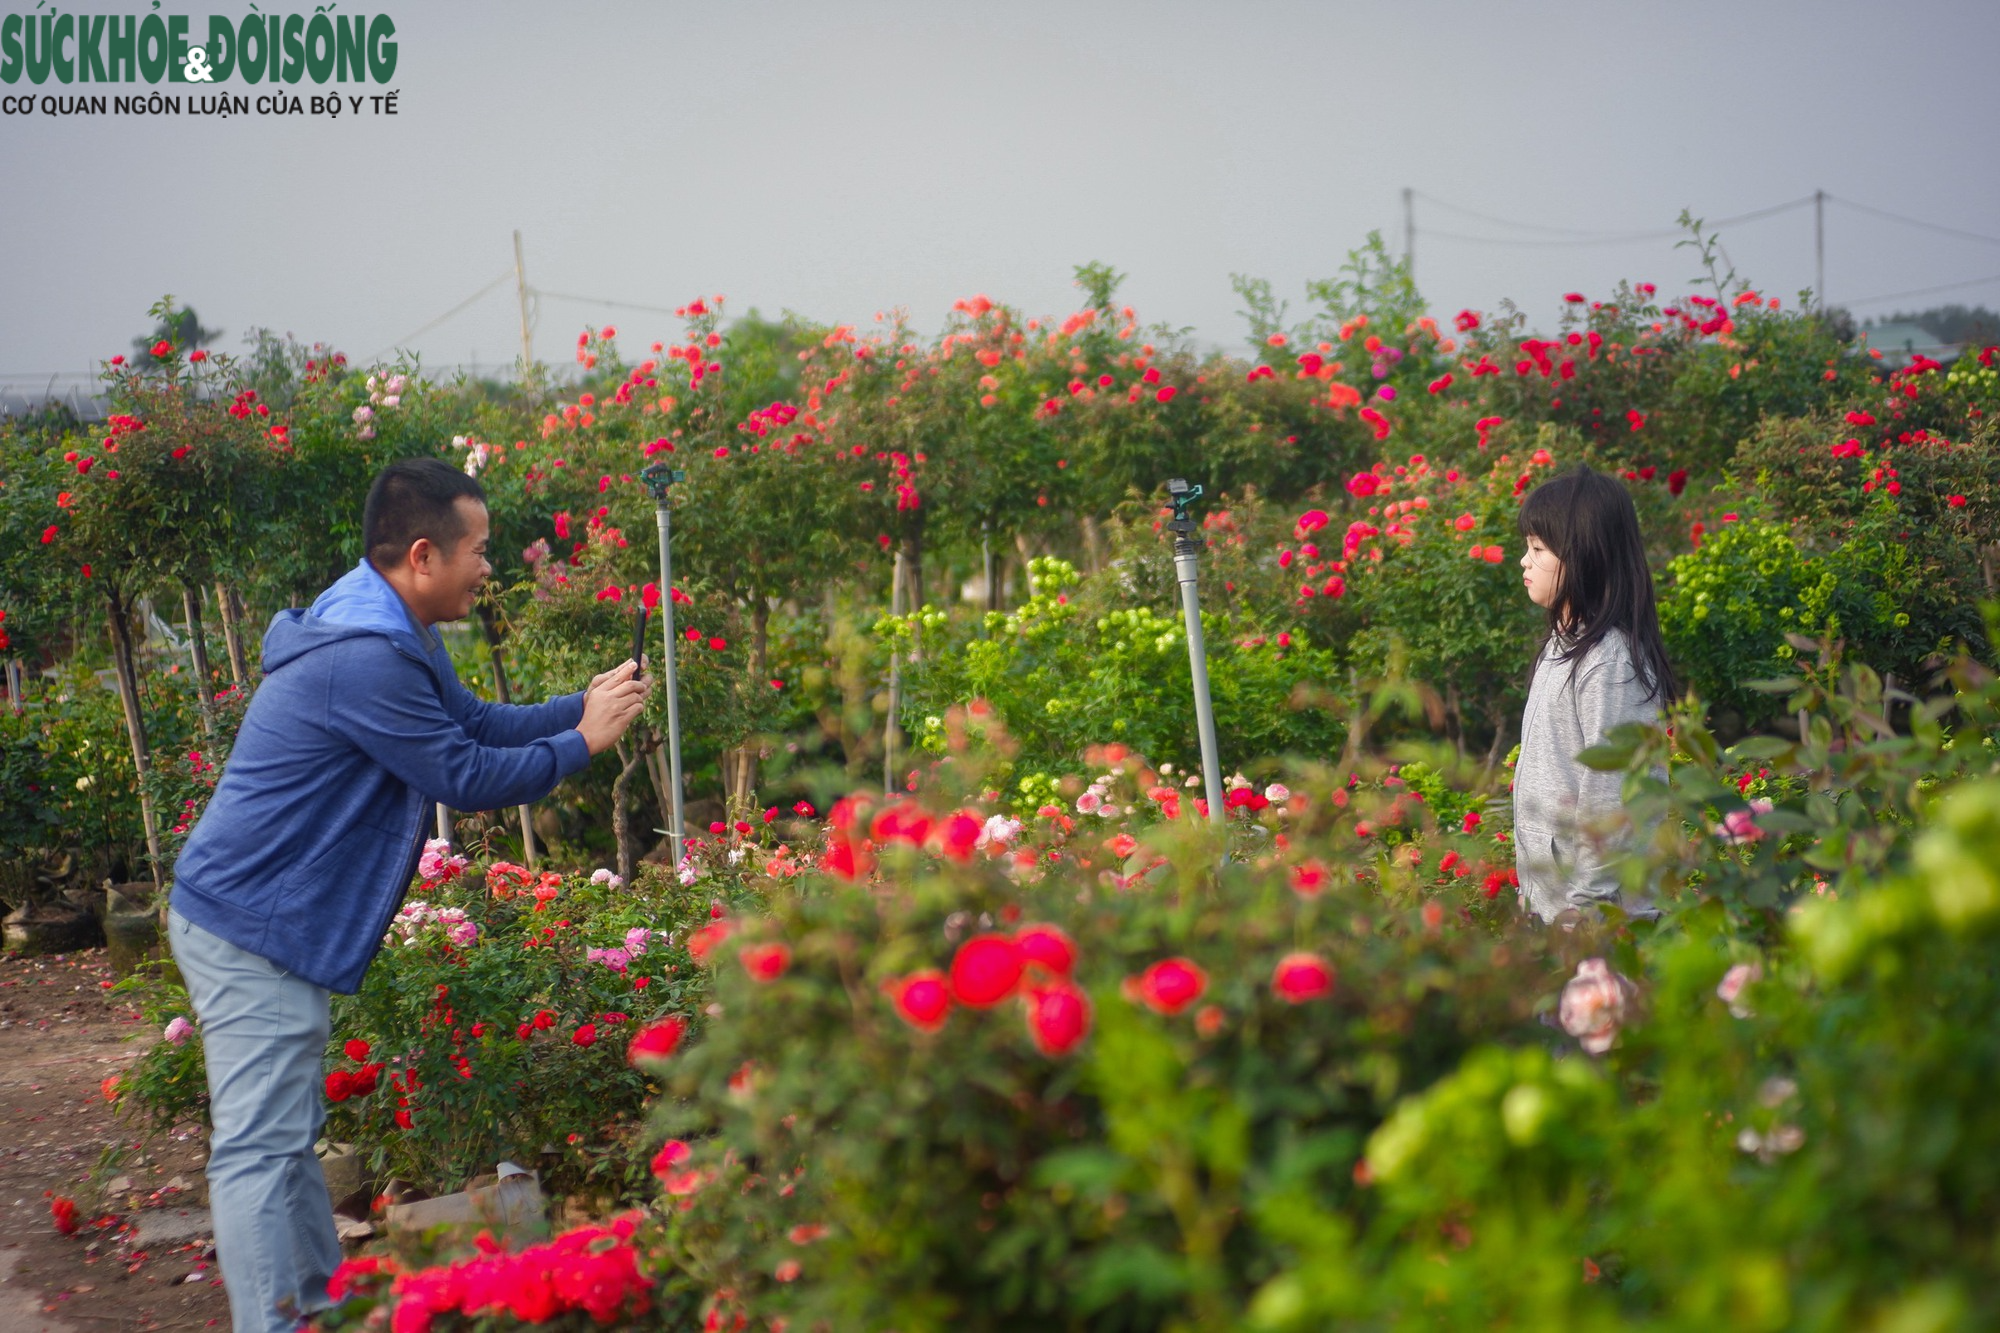  Các bậc phụ huynh đưa con nhỏ tới chợ để mua hoa Tết cũng tranh thủ vào vườn hoa Mê Linh để chụp ảnh.